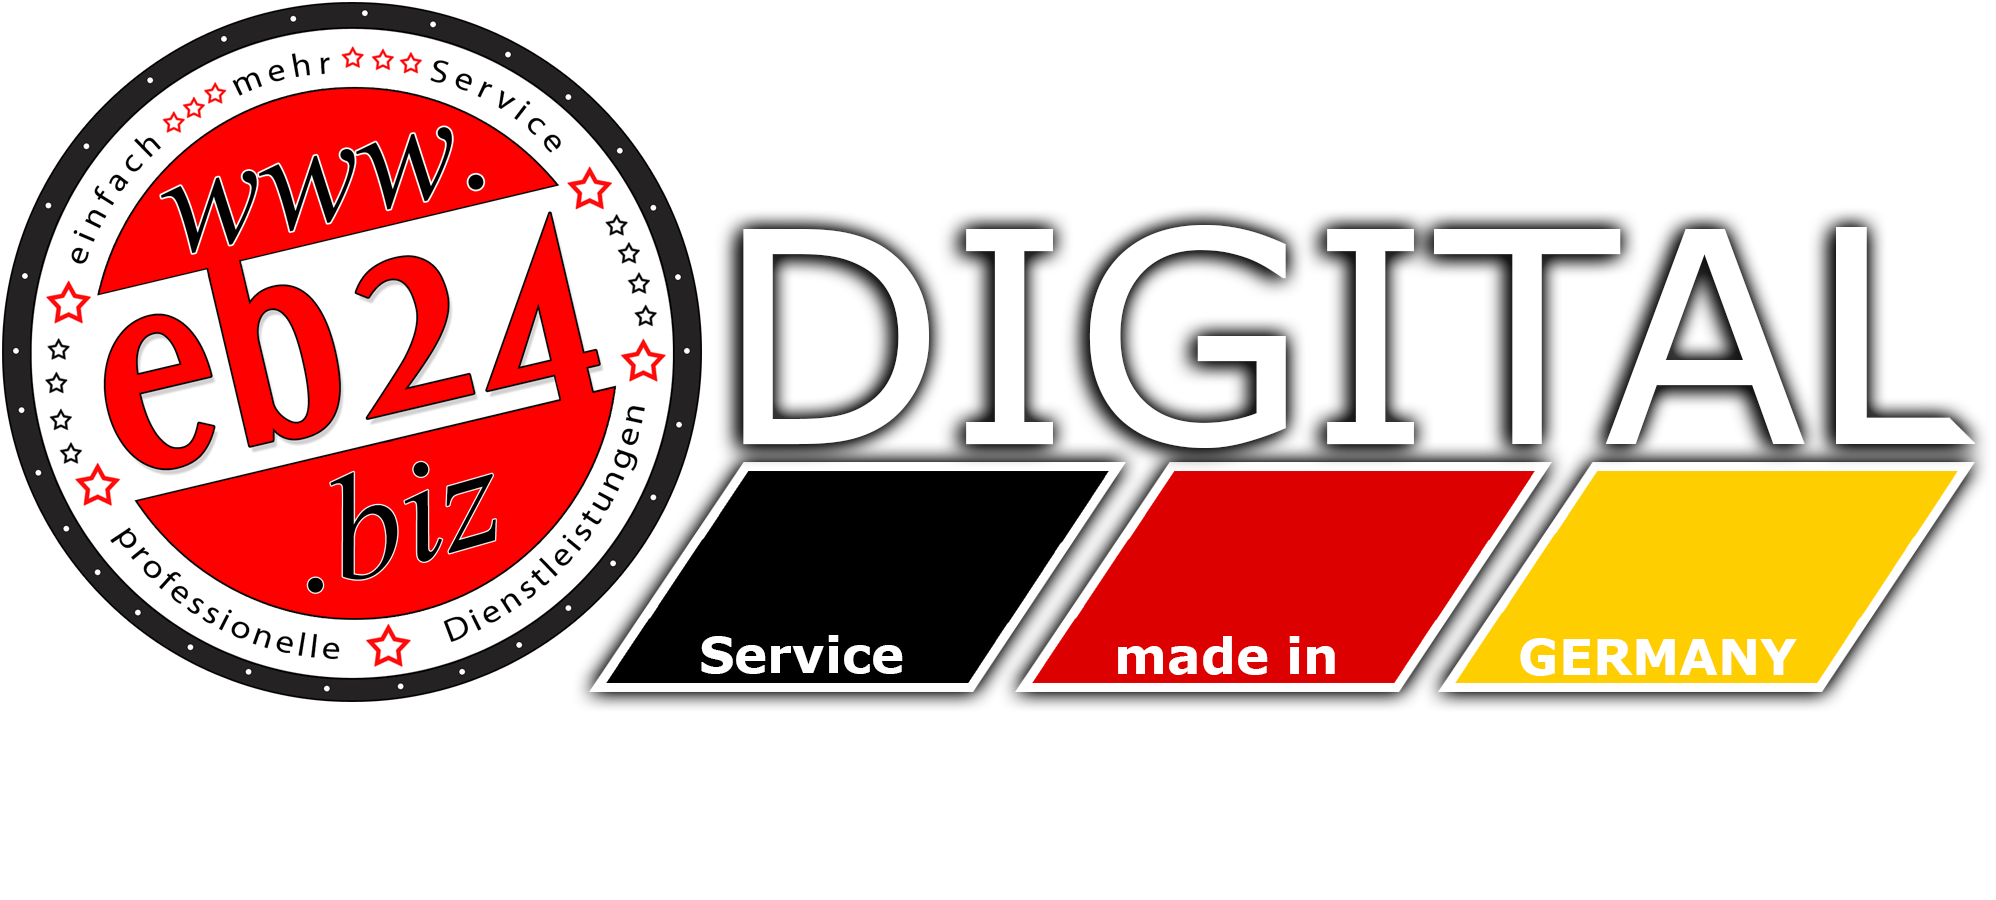 logo-eb24digital